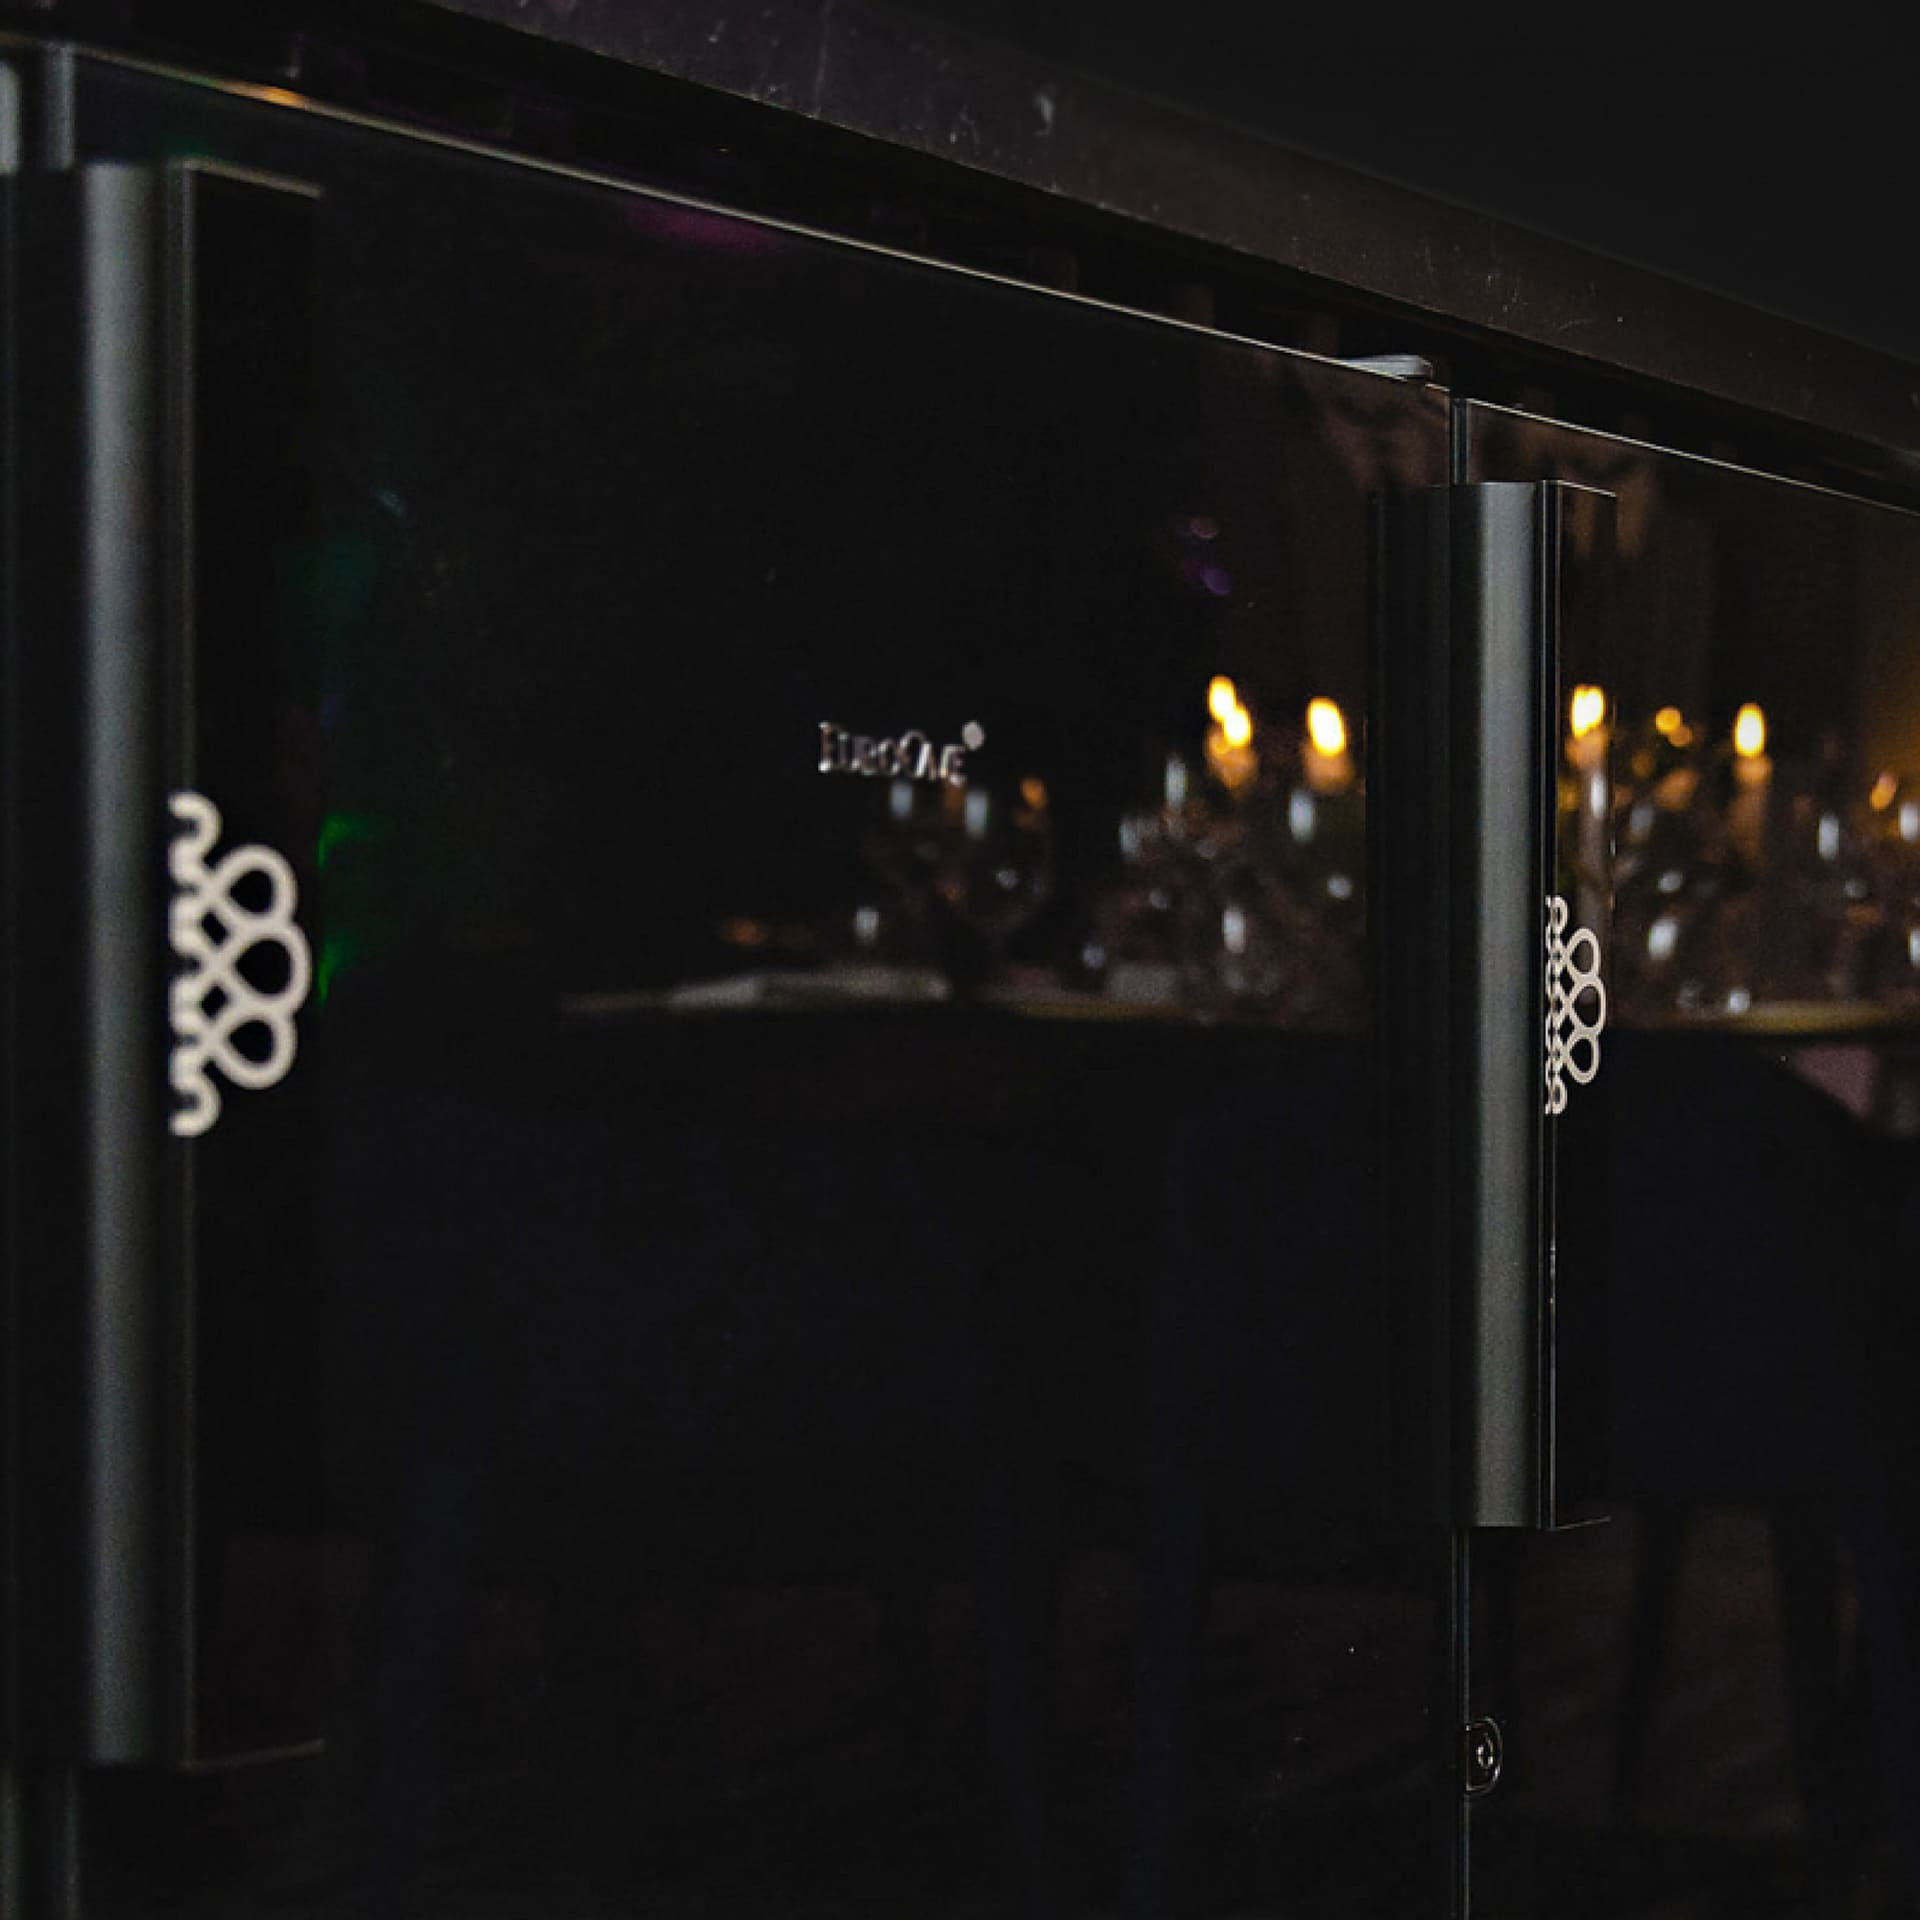 Porte opaque totalement vitrée noire, inspirée des pianos à queue noir laqué de prestige.